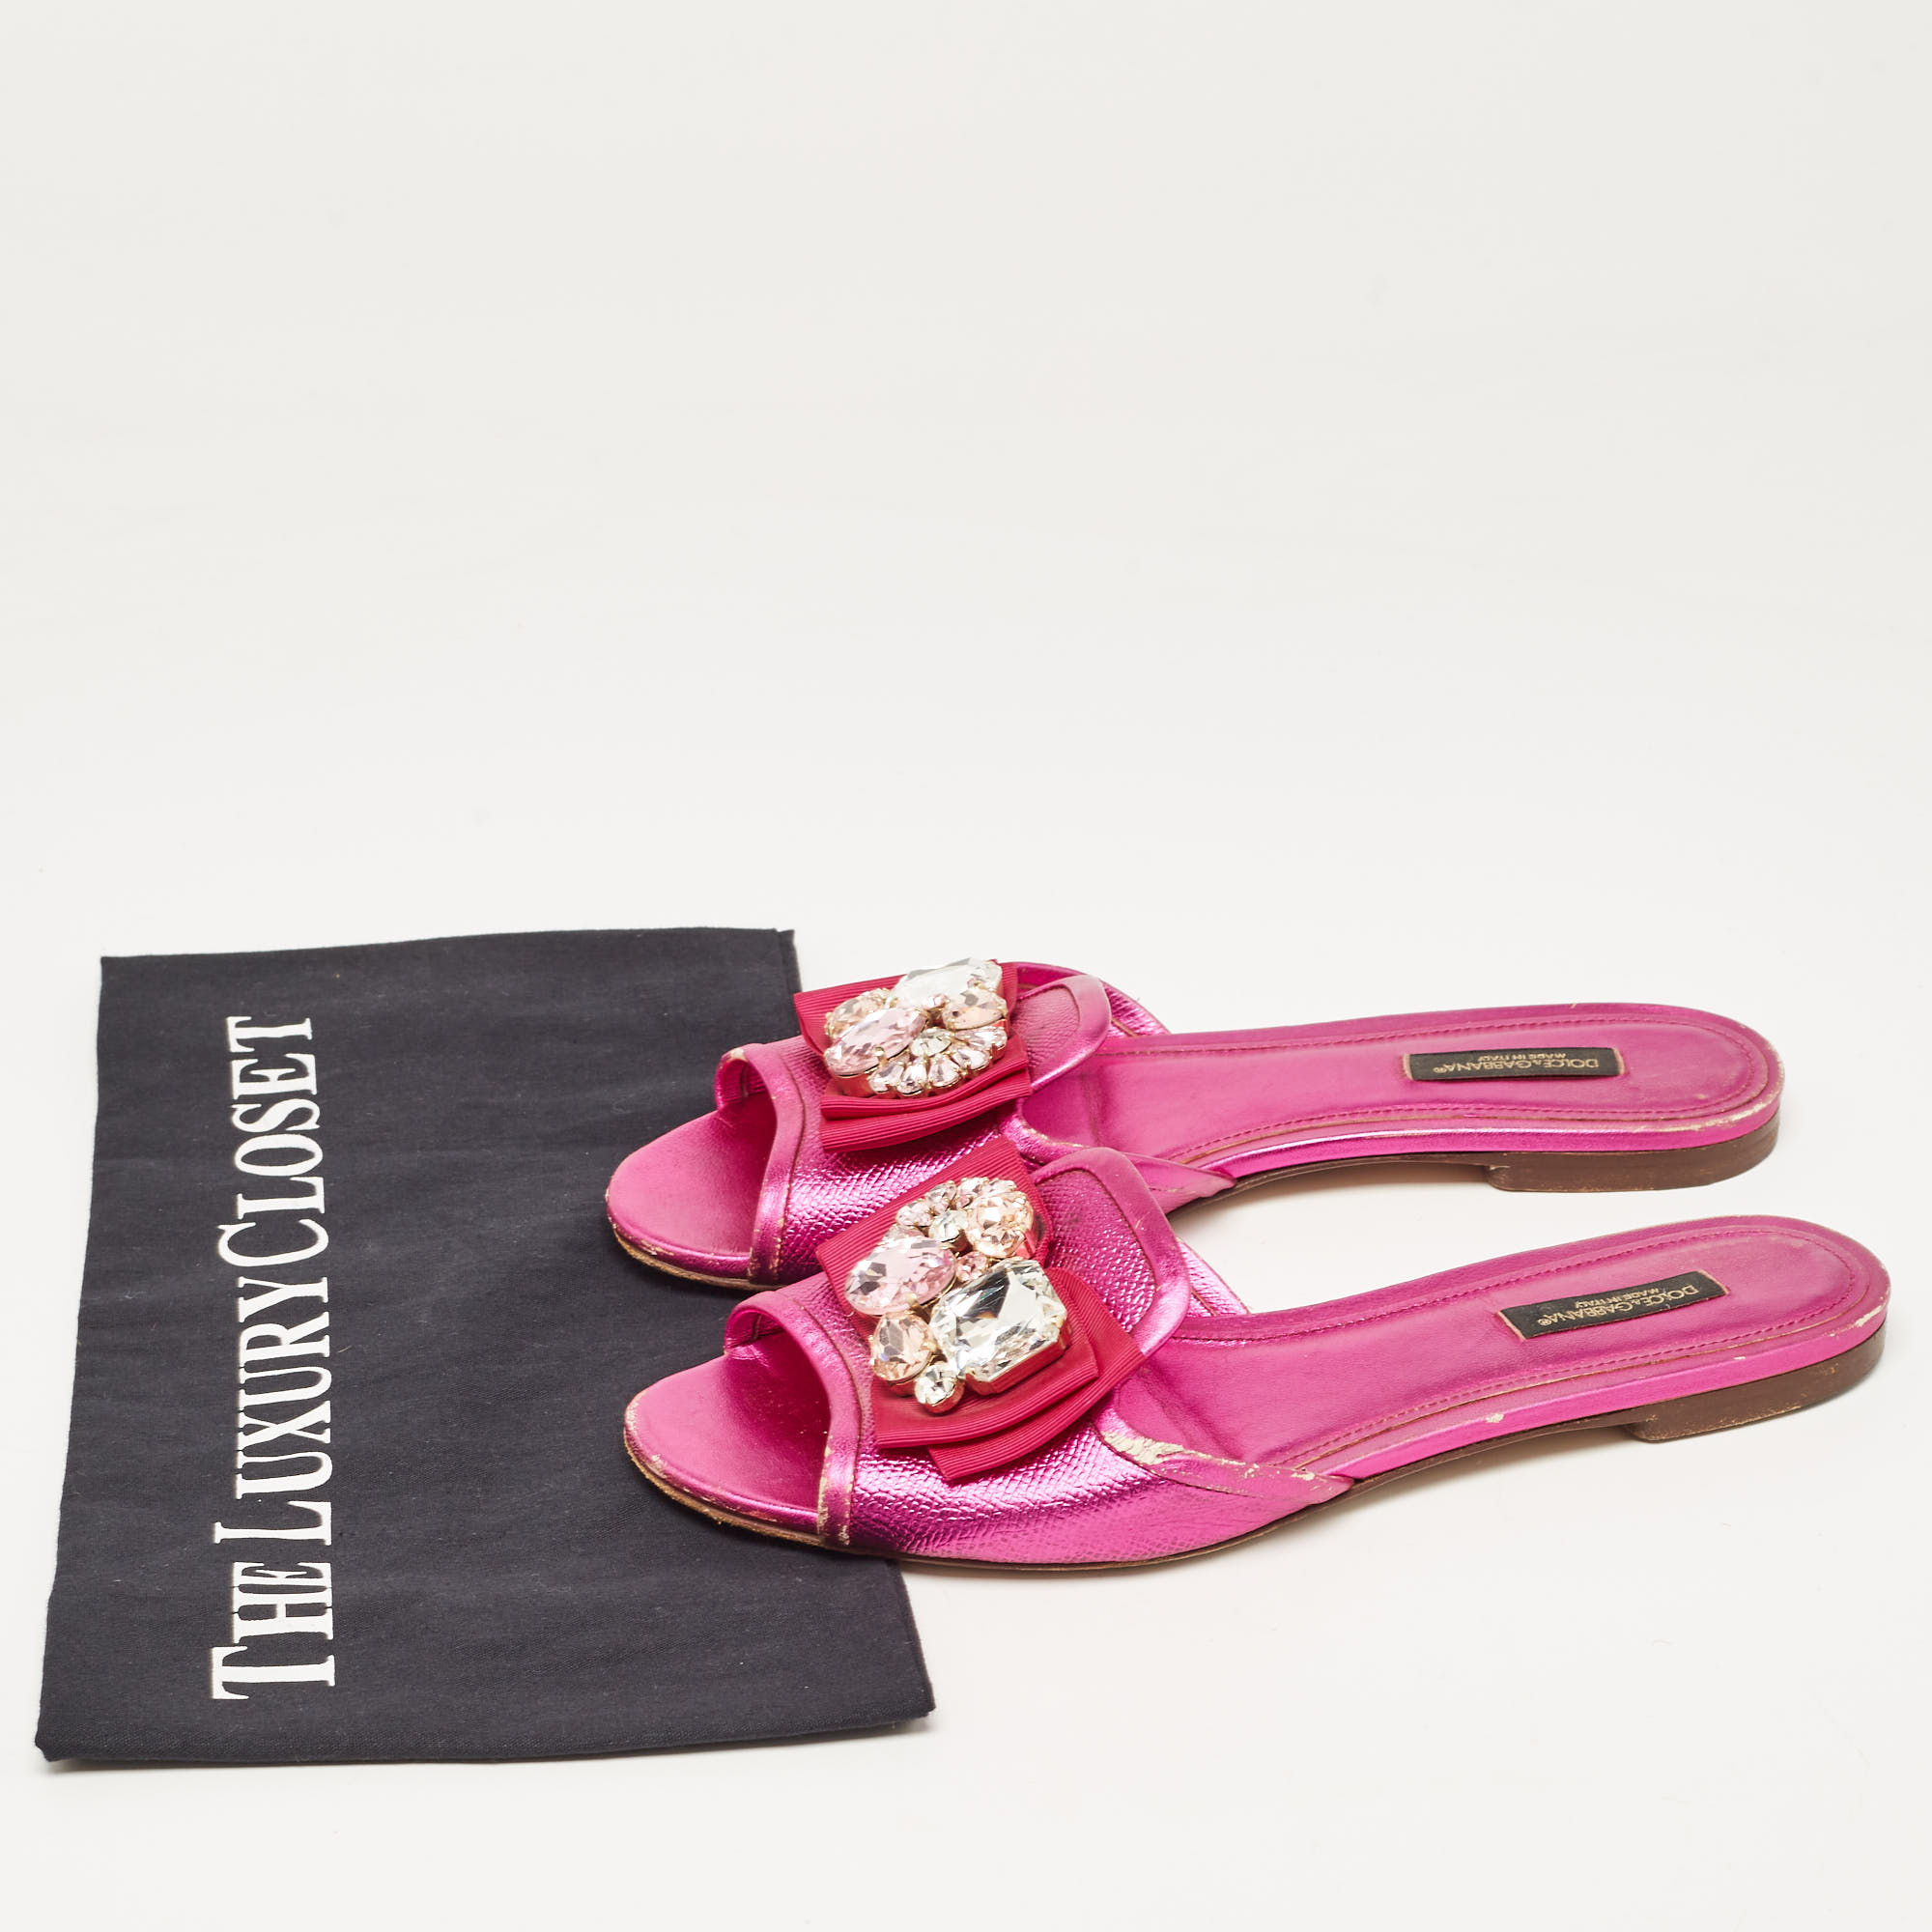 Dolce & Gabbana Pink Leather Crystal Embellished Flat Slides Size 37.5